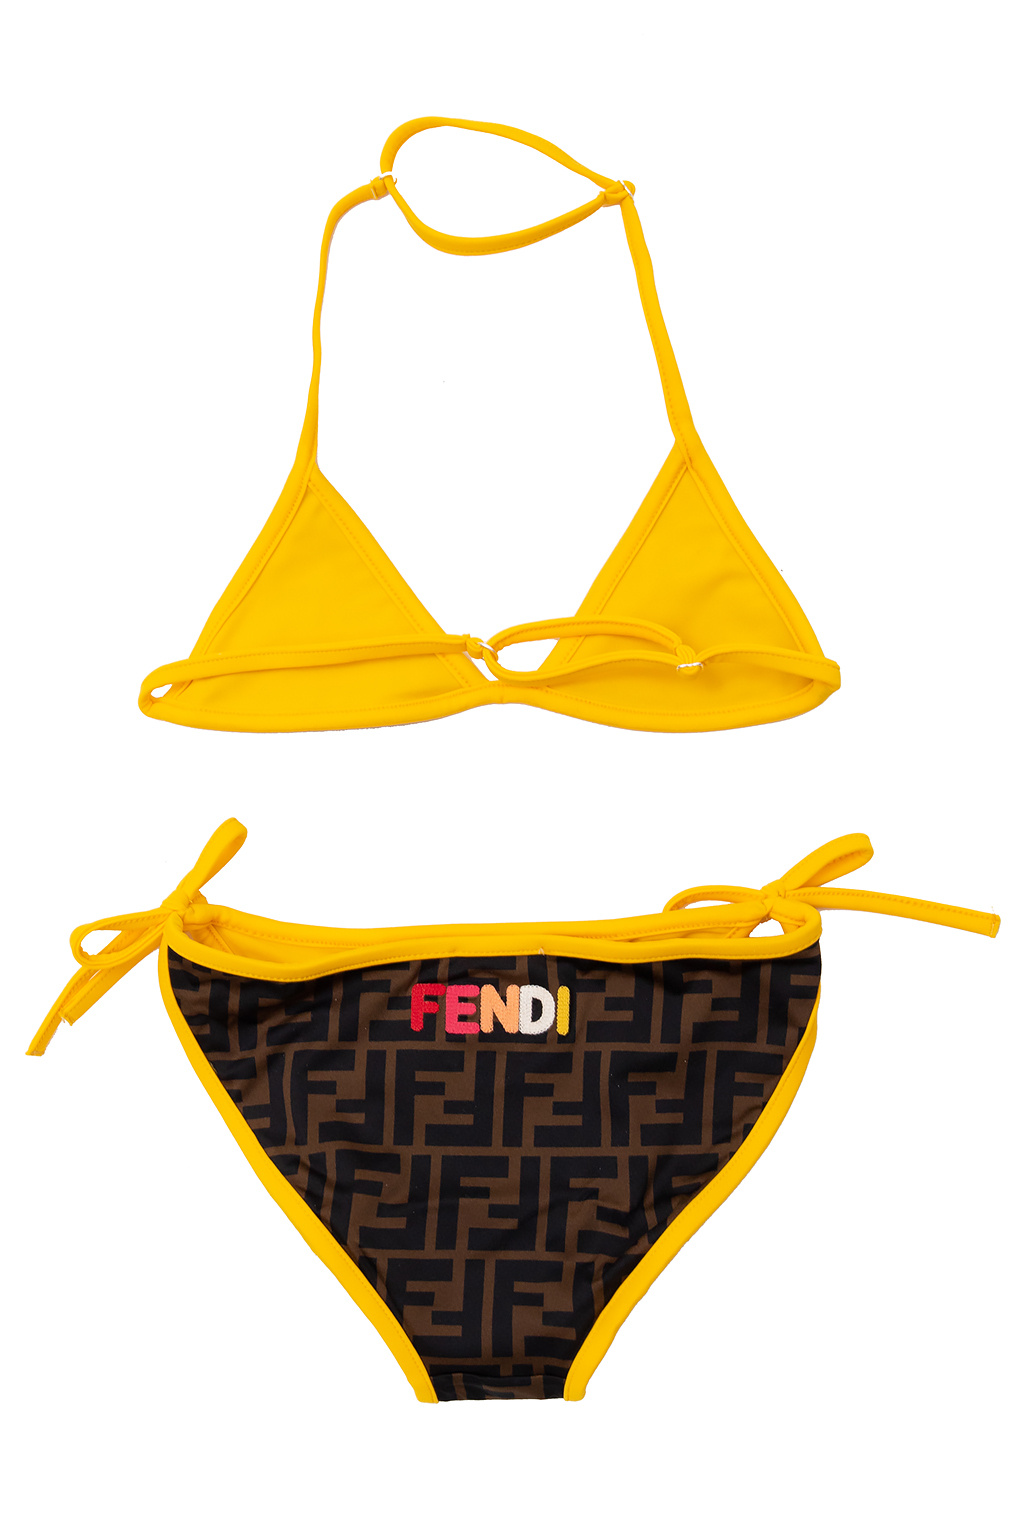 Fendirama bikini set by Fendi